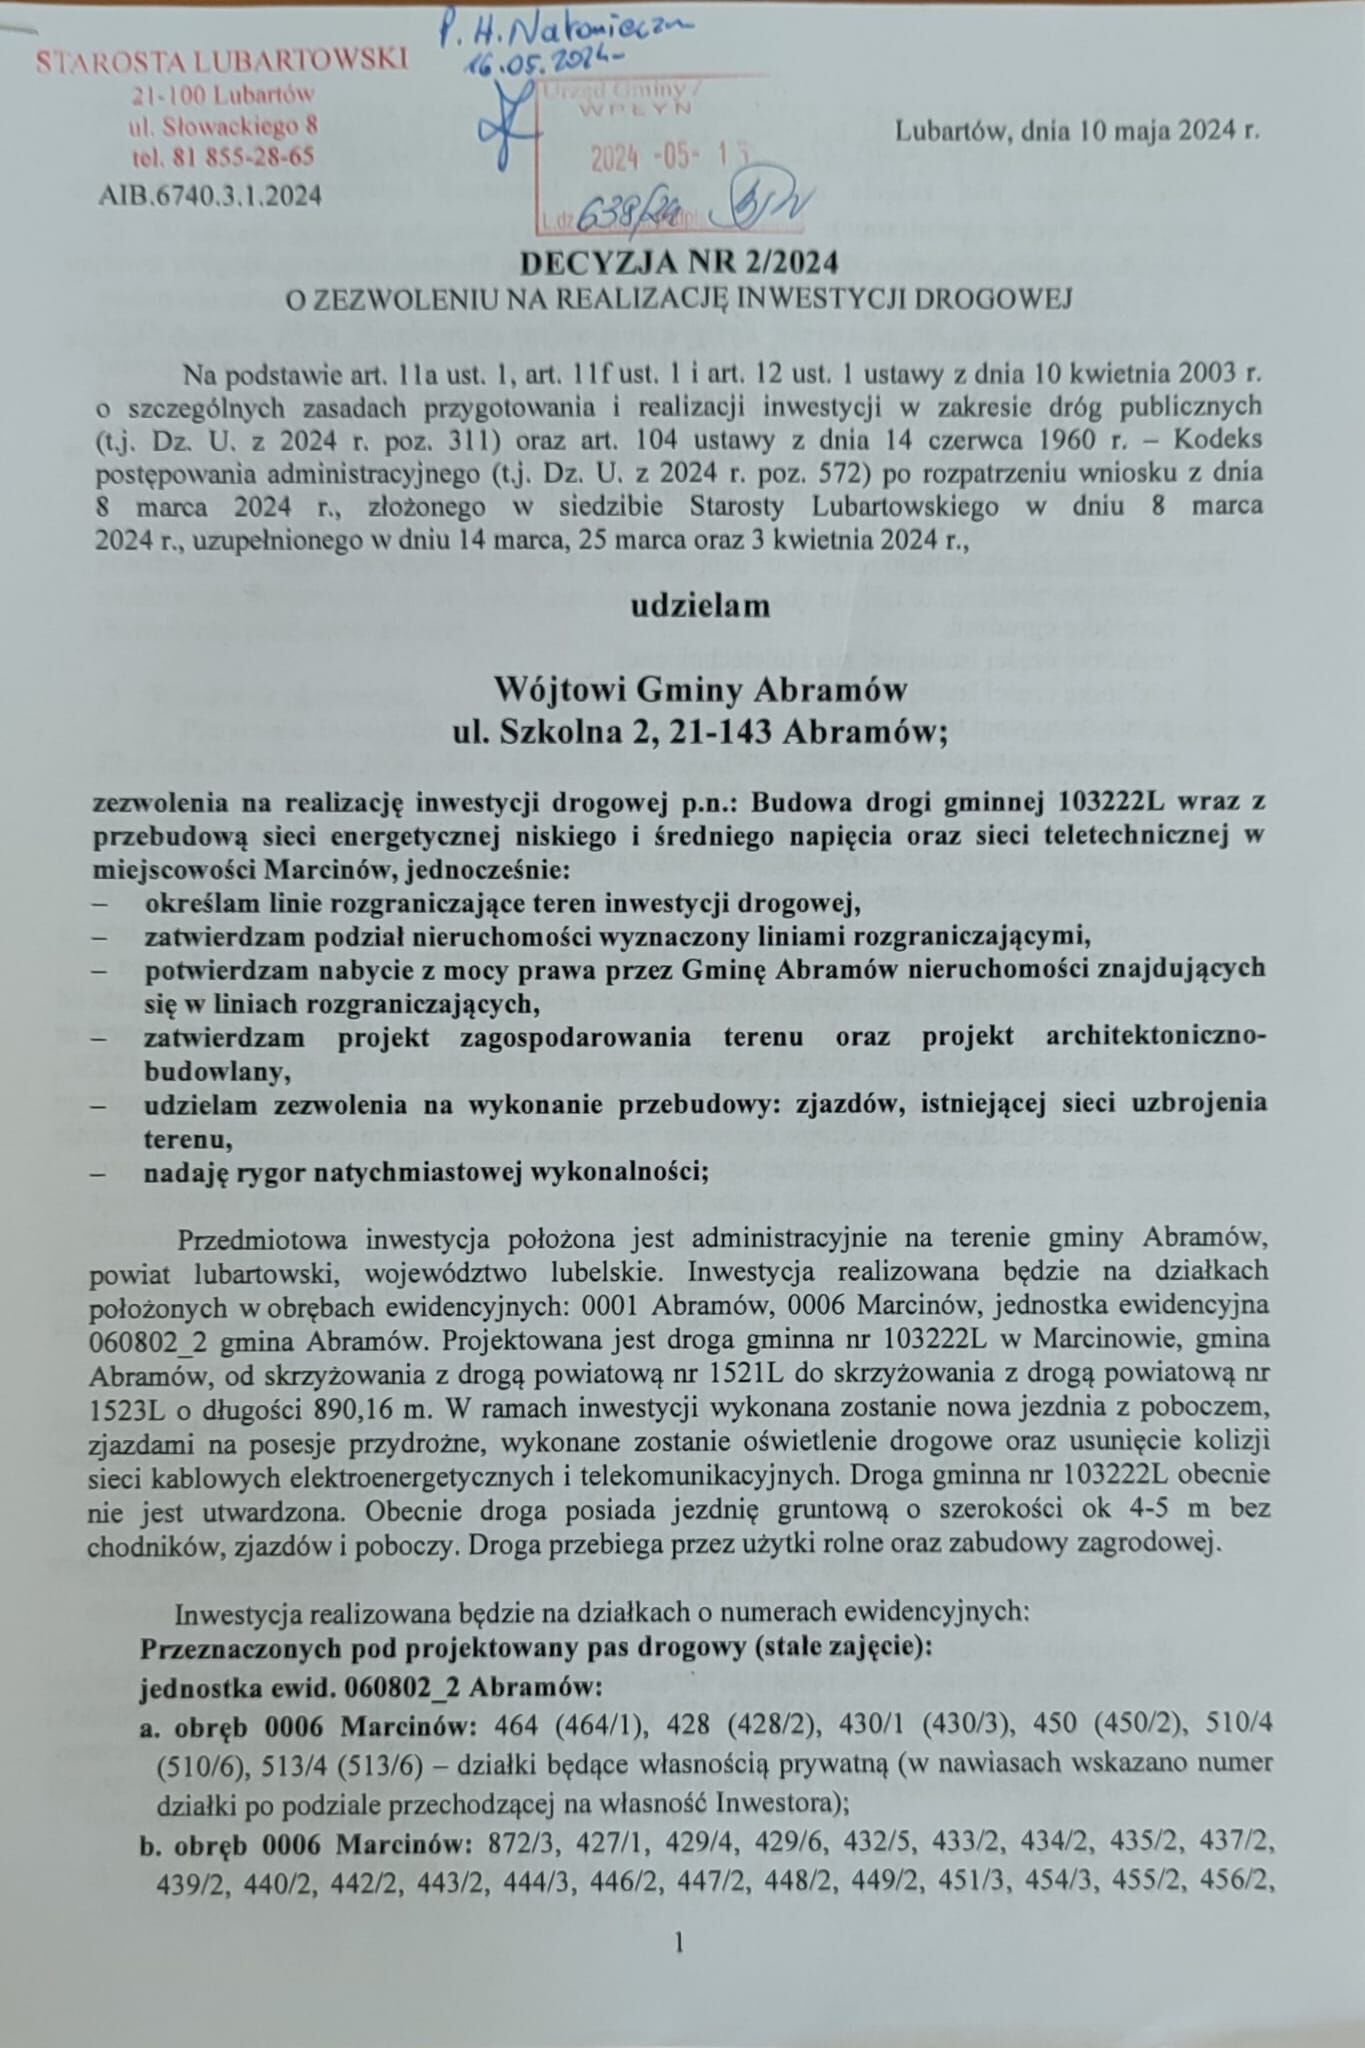 Zdjęcie przedstawia dokument - Decyzję Nr ZAR/224 z 2003 roku wydaną przez Starostwo Lubartowskie, dotyczącą realizacji inwestycji drogowej w miejscowości Abramów.